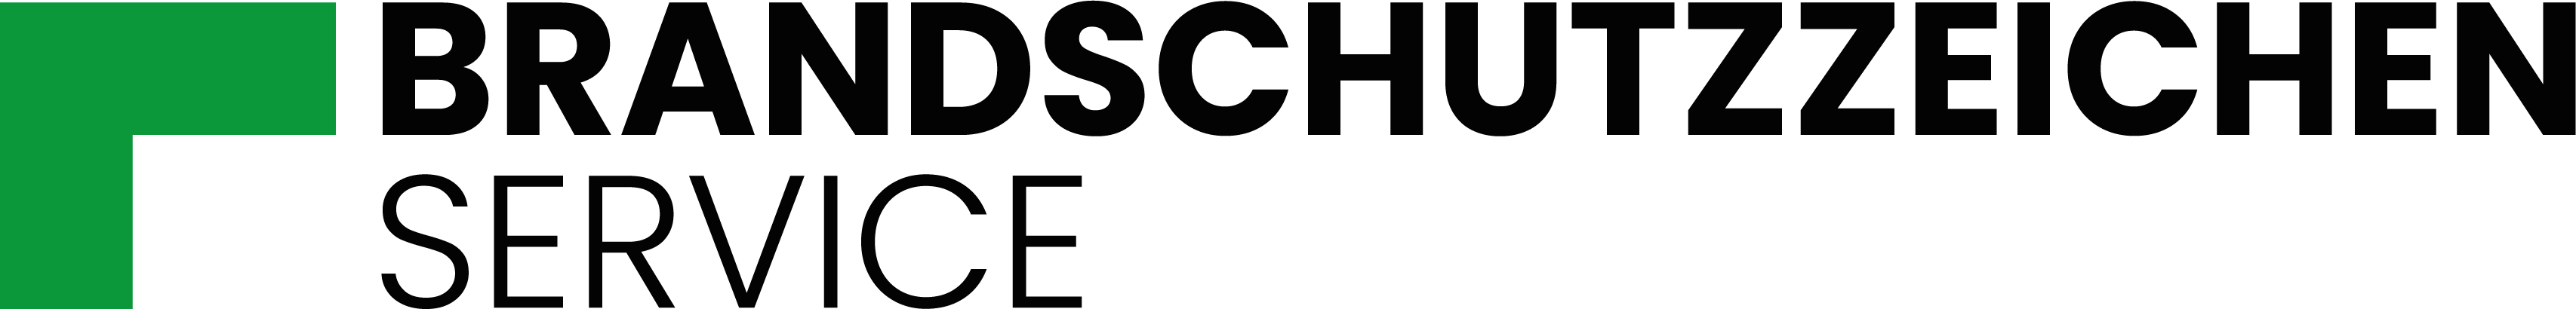 Brandschutzzeichen Service Logo